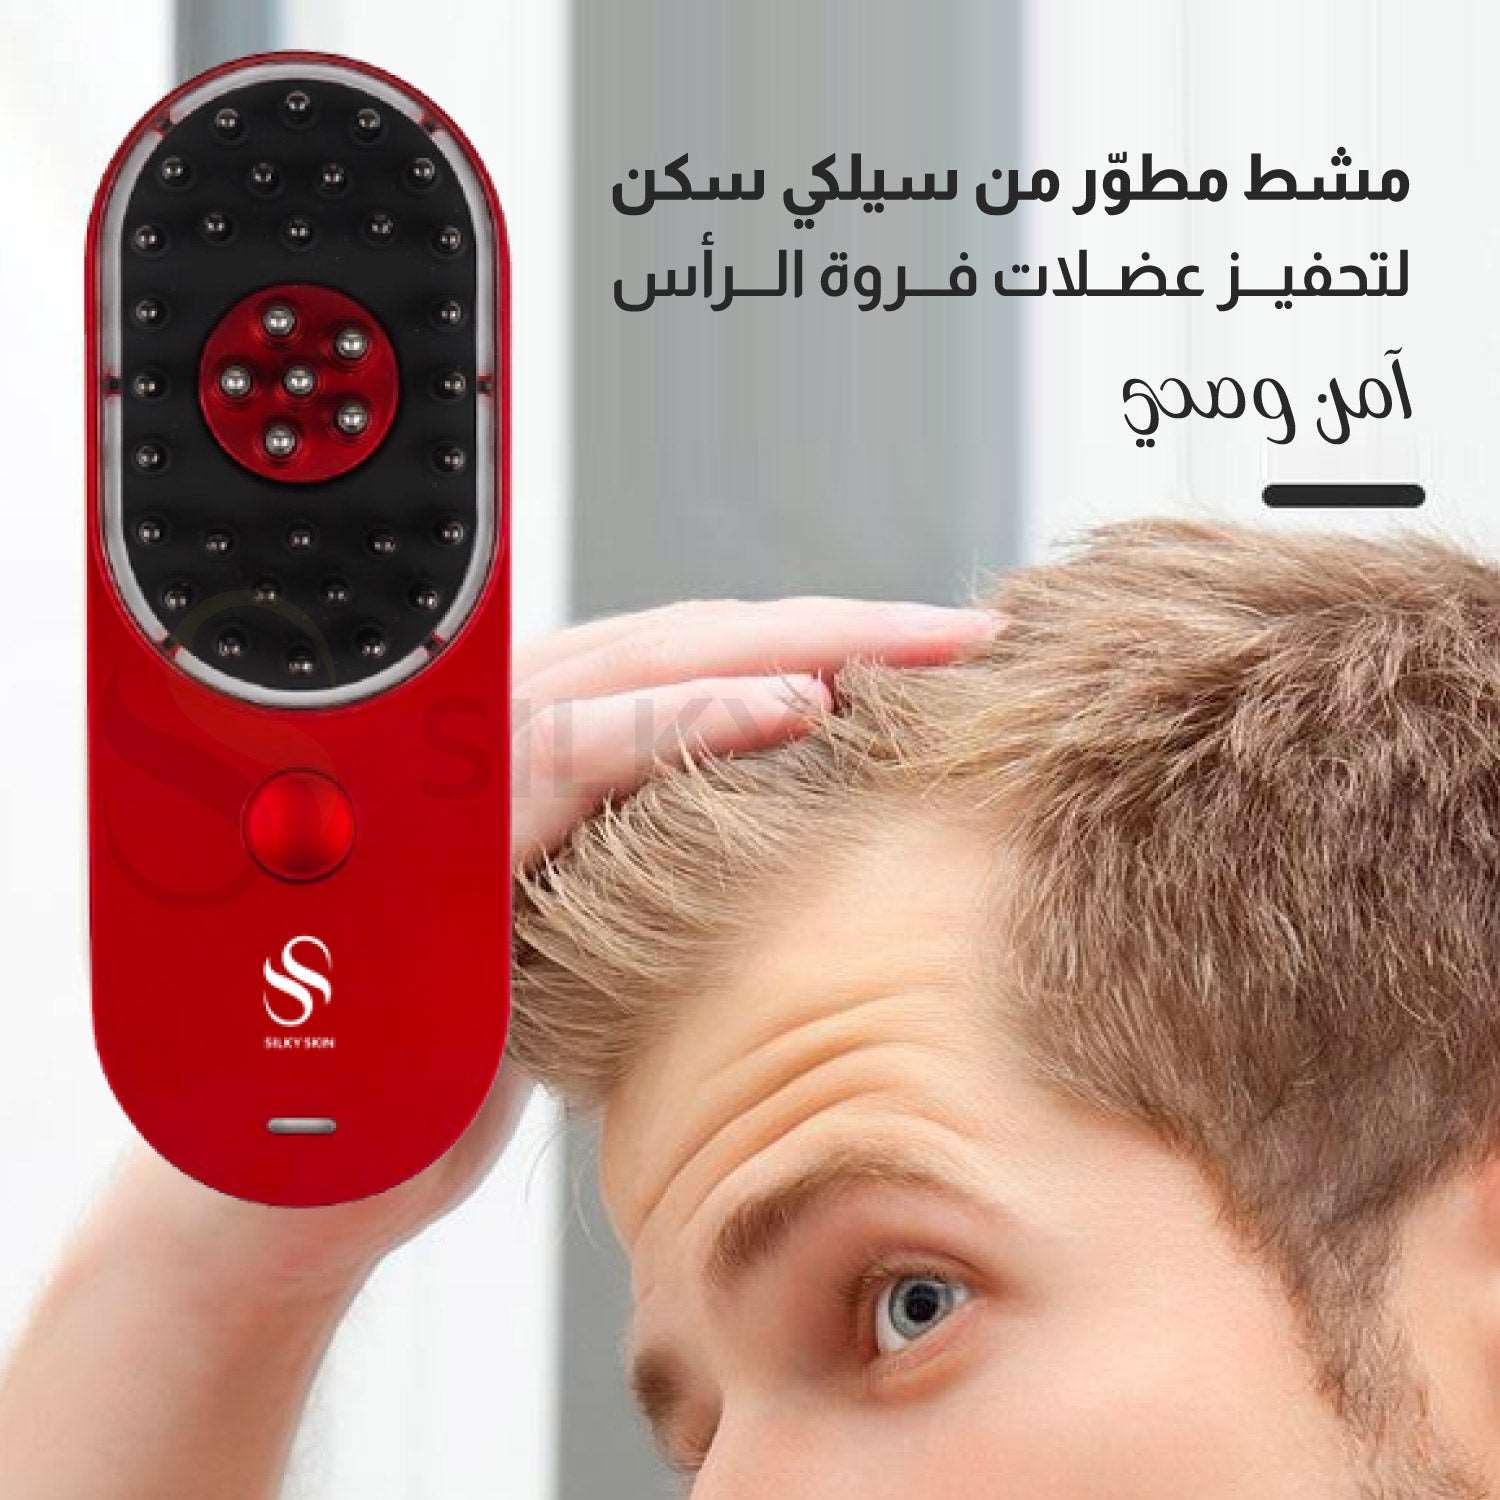 جهاز سيلكي Hair pod للعناية بفروة الرأس والشعر بتقنية LED & EMS المطورة